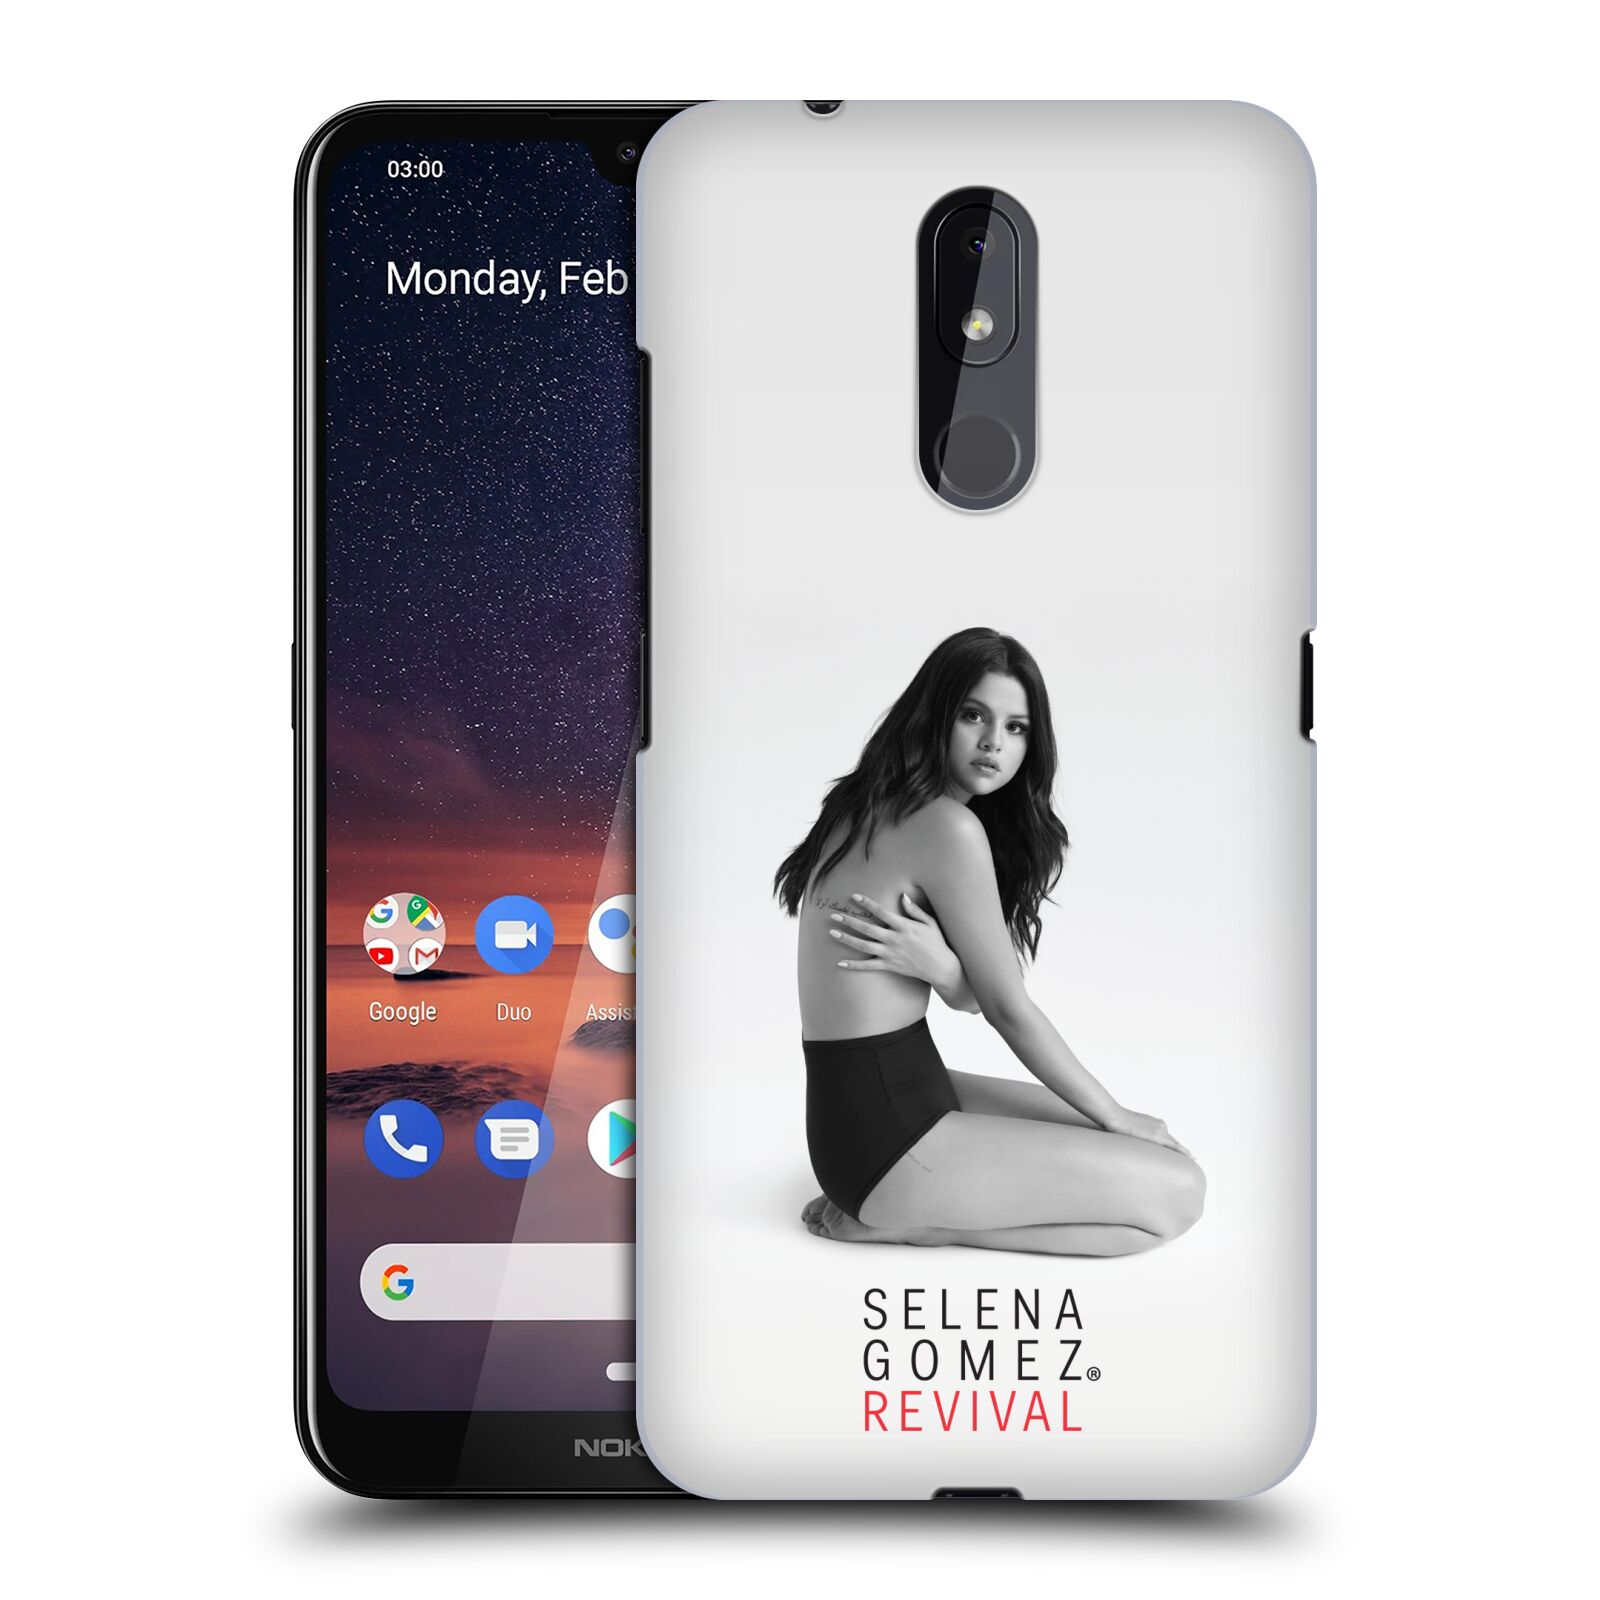 Pouzdro na mobil Nokia 3.2 - HEAD CASE - Zpěvačka Selena Gomez foto Revival profil